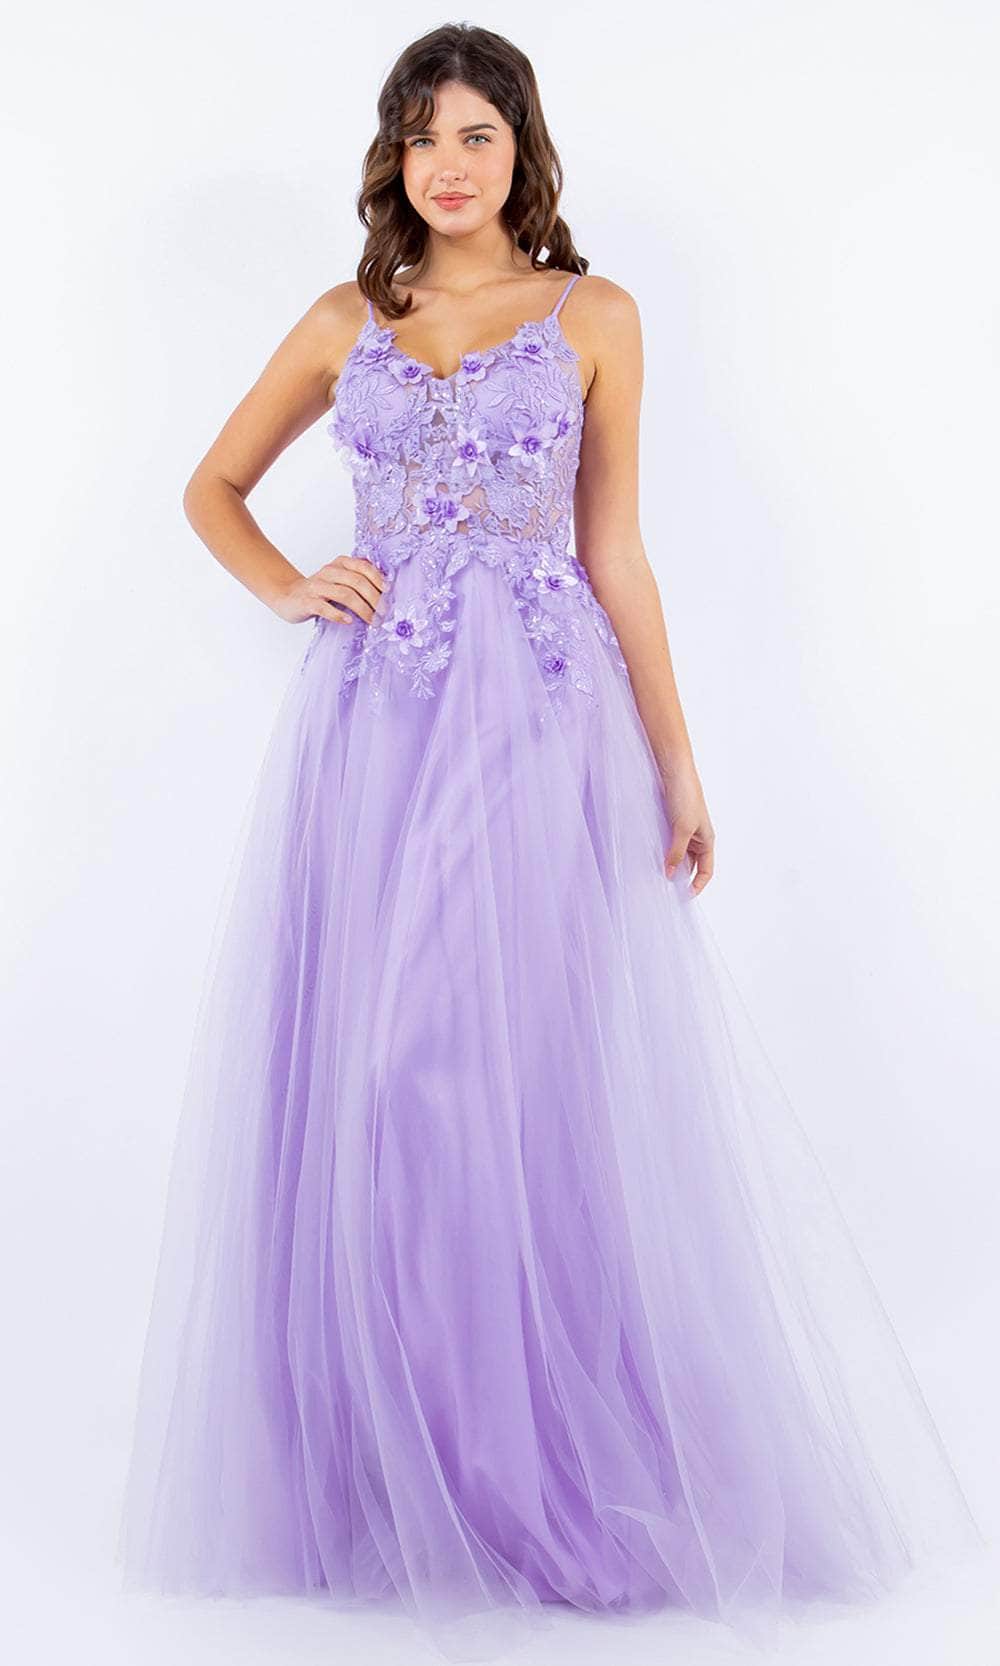 Cinderella Couture 8038J - 3D Floral Applique V-Neck Prom Dress
